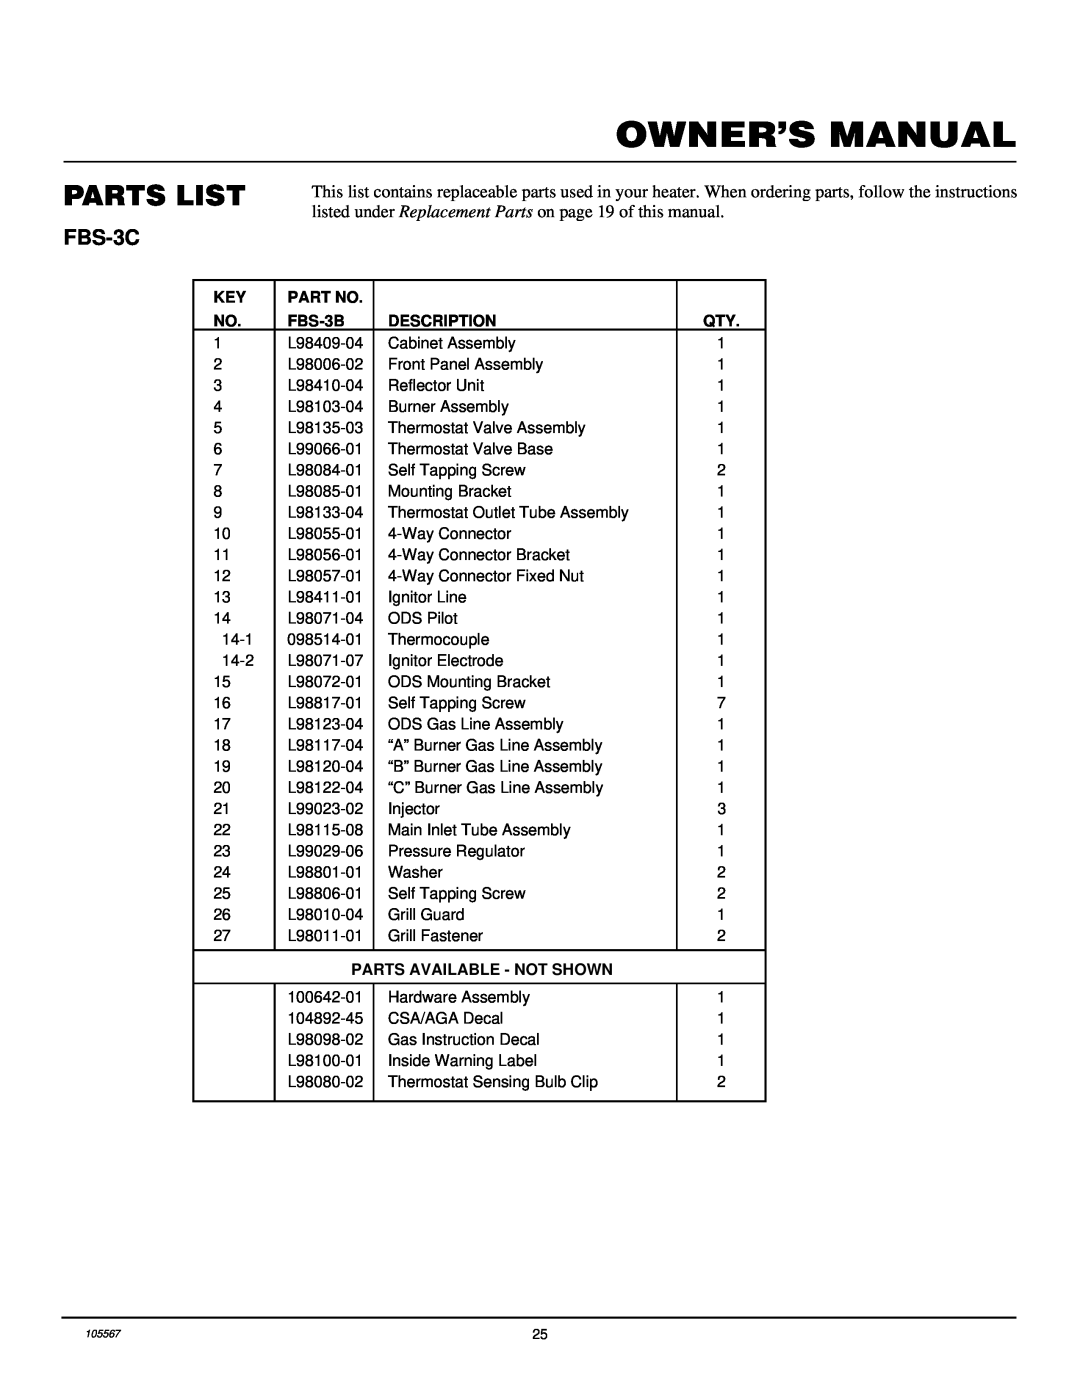 Desa FB-3B installation manual Owner’S Manual, Parts List, FBS-3C 